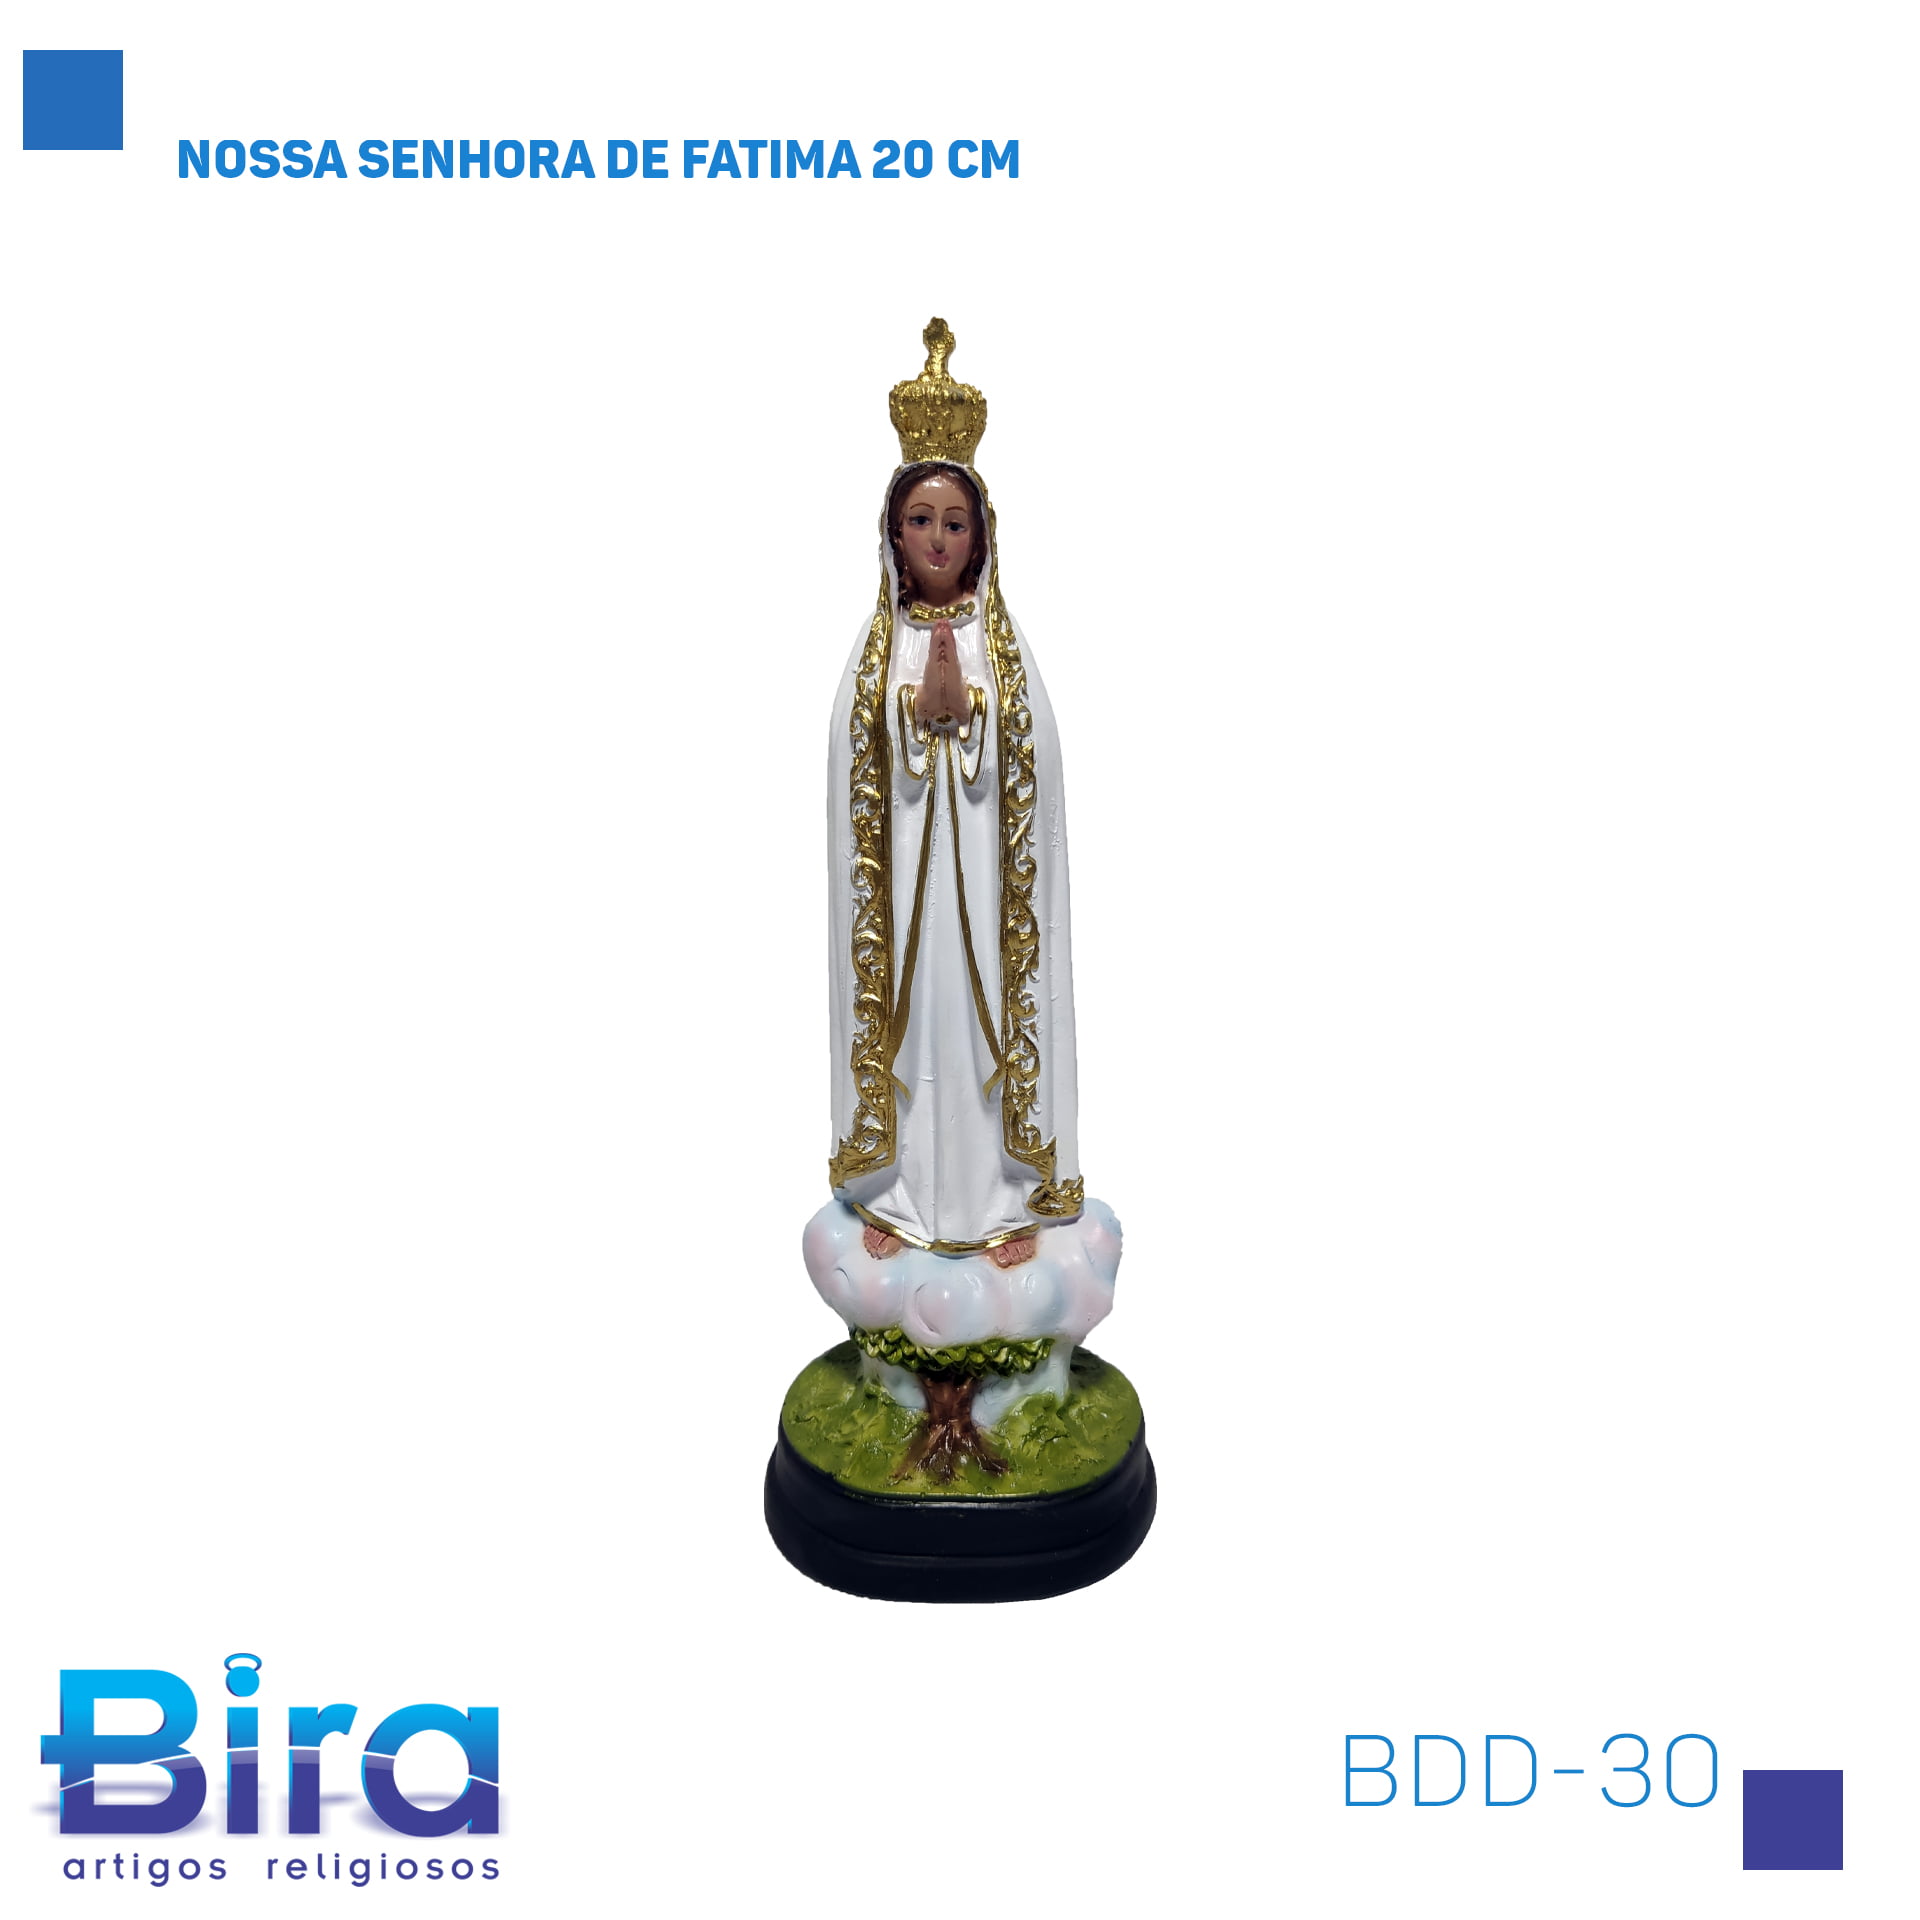 Bira Artigos Religiosos - NOSSA SENHORA DE FATIMA 20 CM Cód.: BDD-30